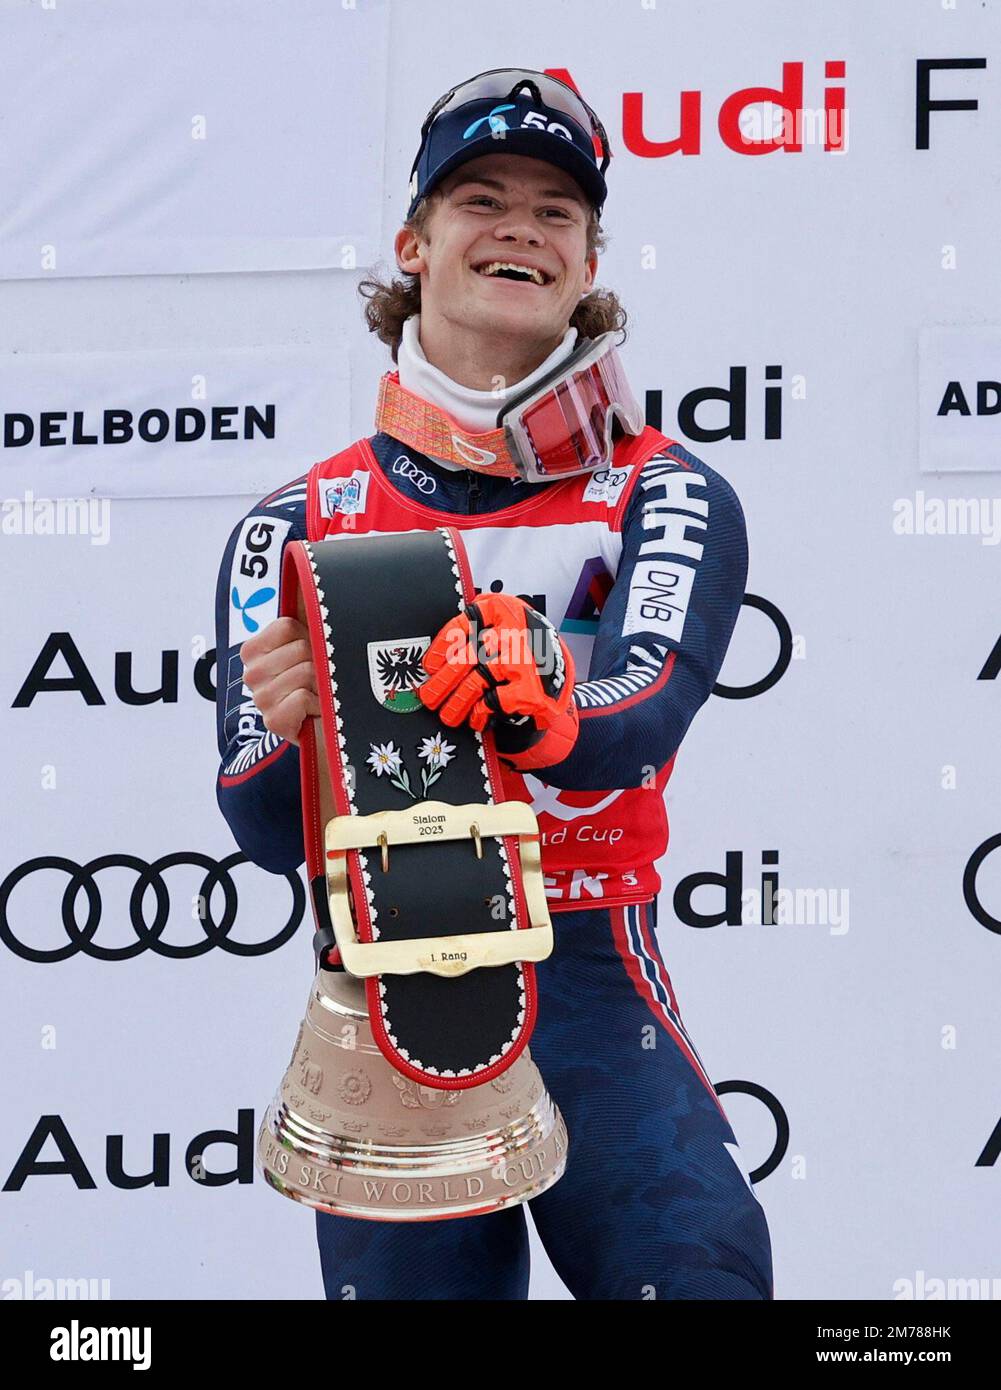 Ski alpin - FIS coupe du monde de ski alpin - Slalom masculin - Adelboden, Suisse - 8 janvier 2023 Lucas Braathen Norvège célèbre avec le trophée après avoir remporté REUTERS/Stefan Wermuth Banque D'Images